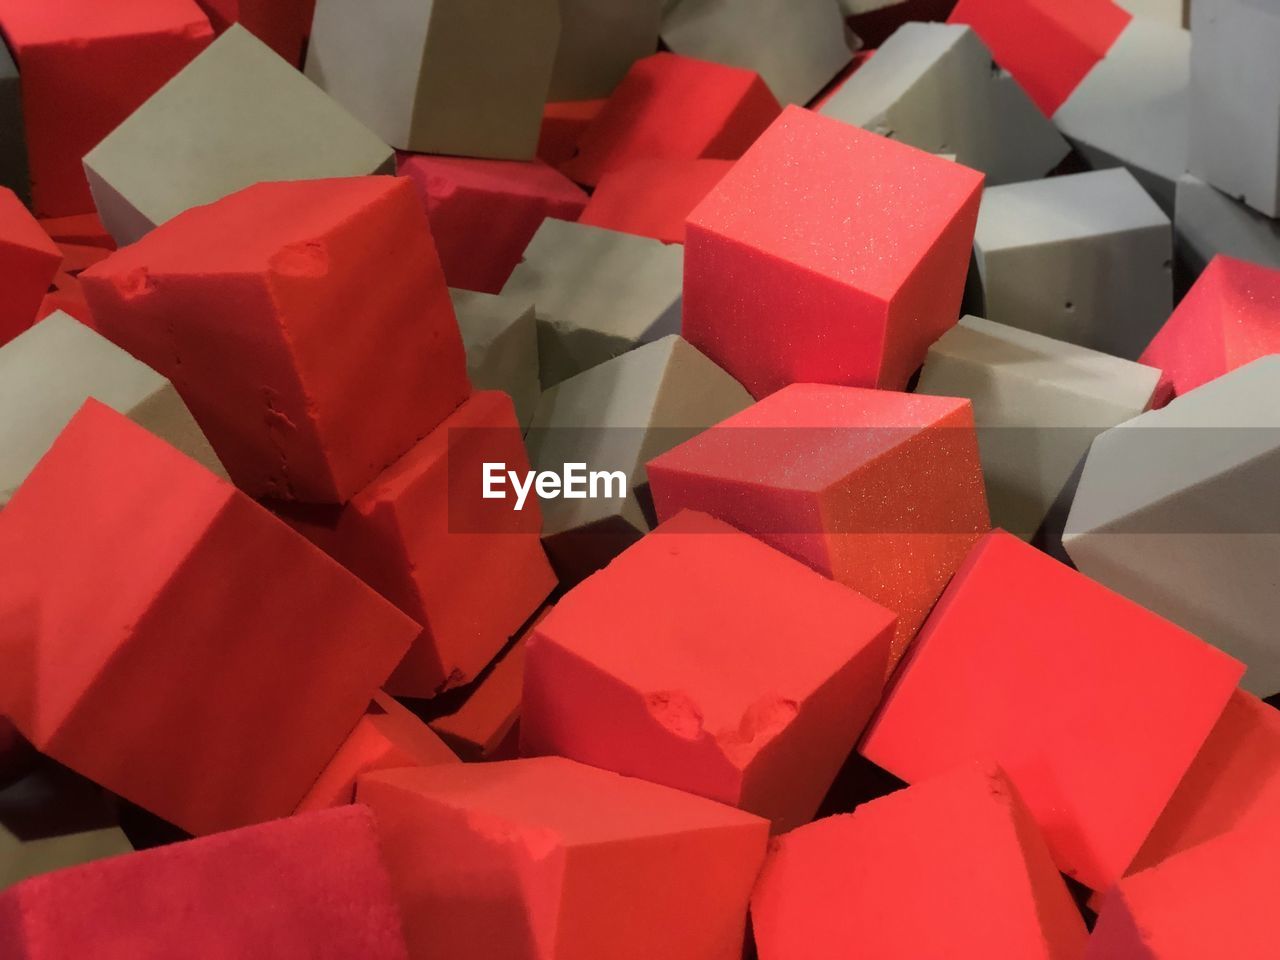 Full frame shot of red and gray sponge blocks